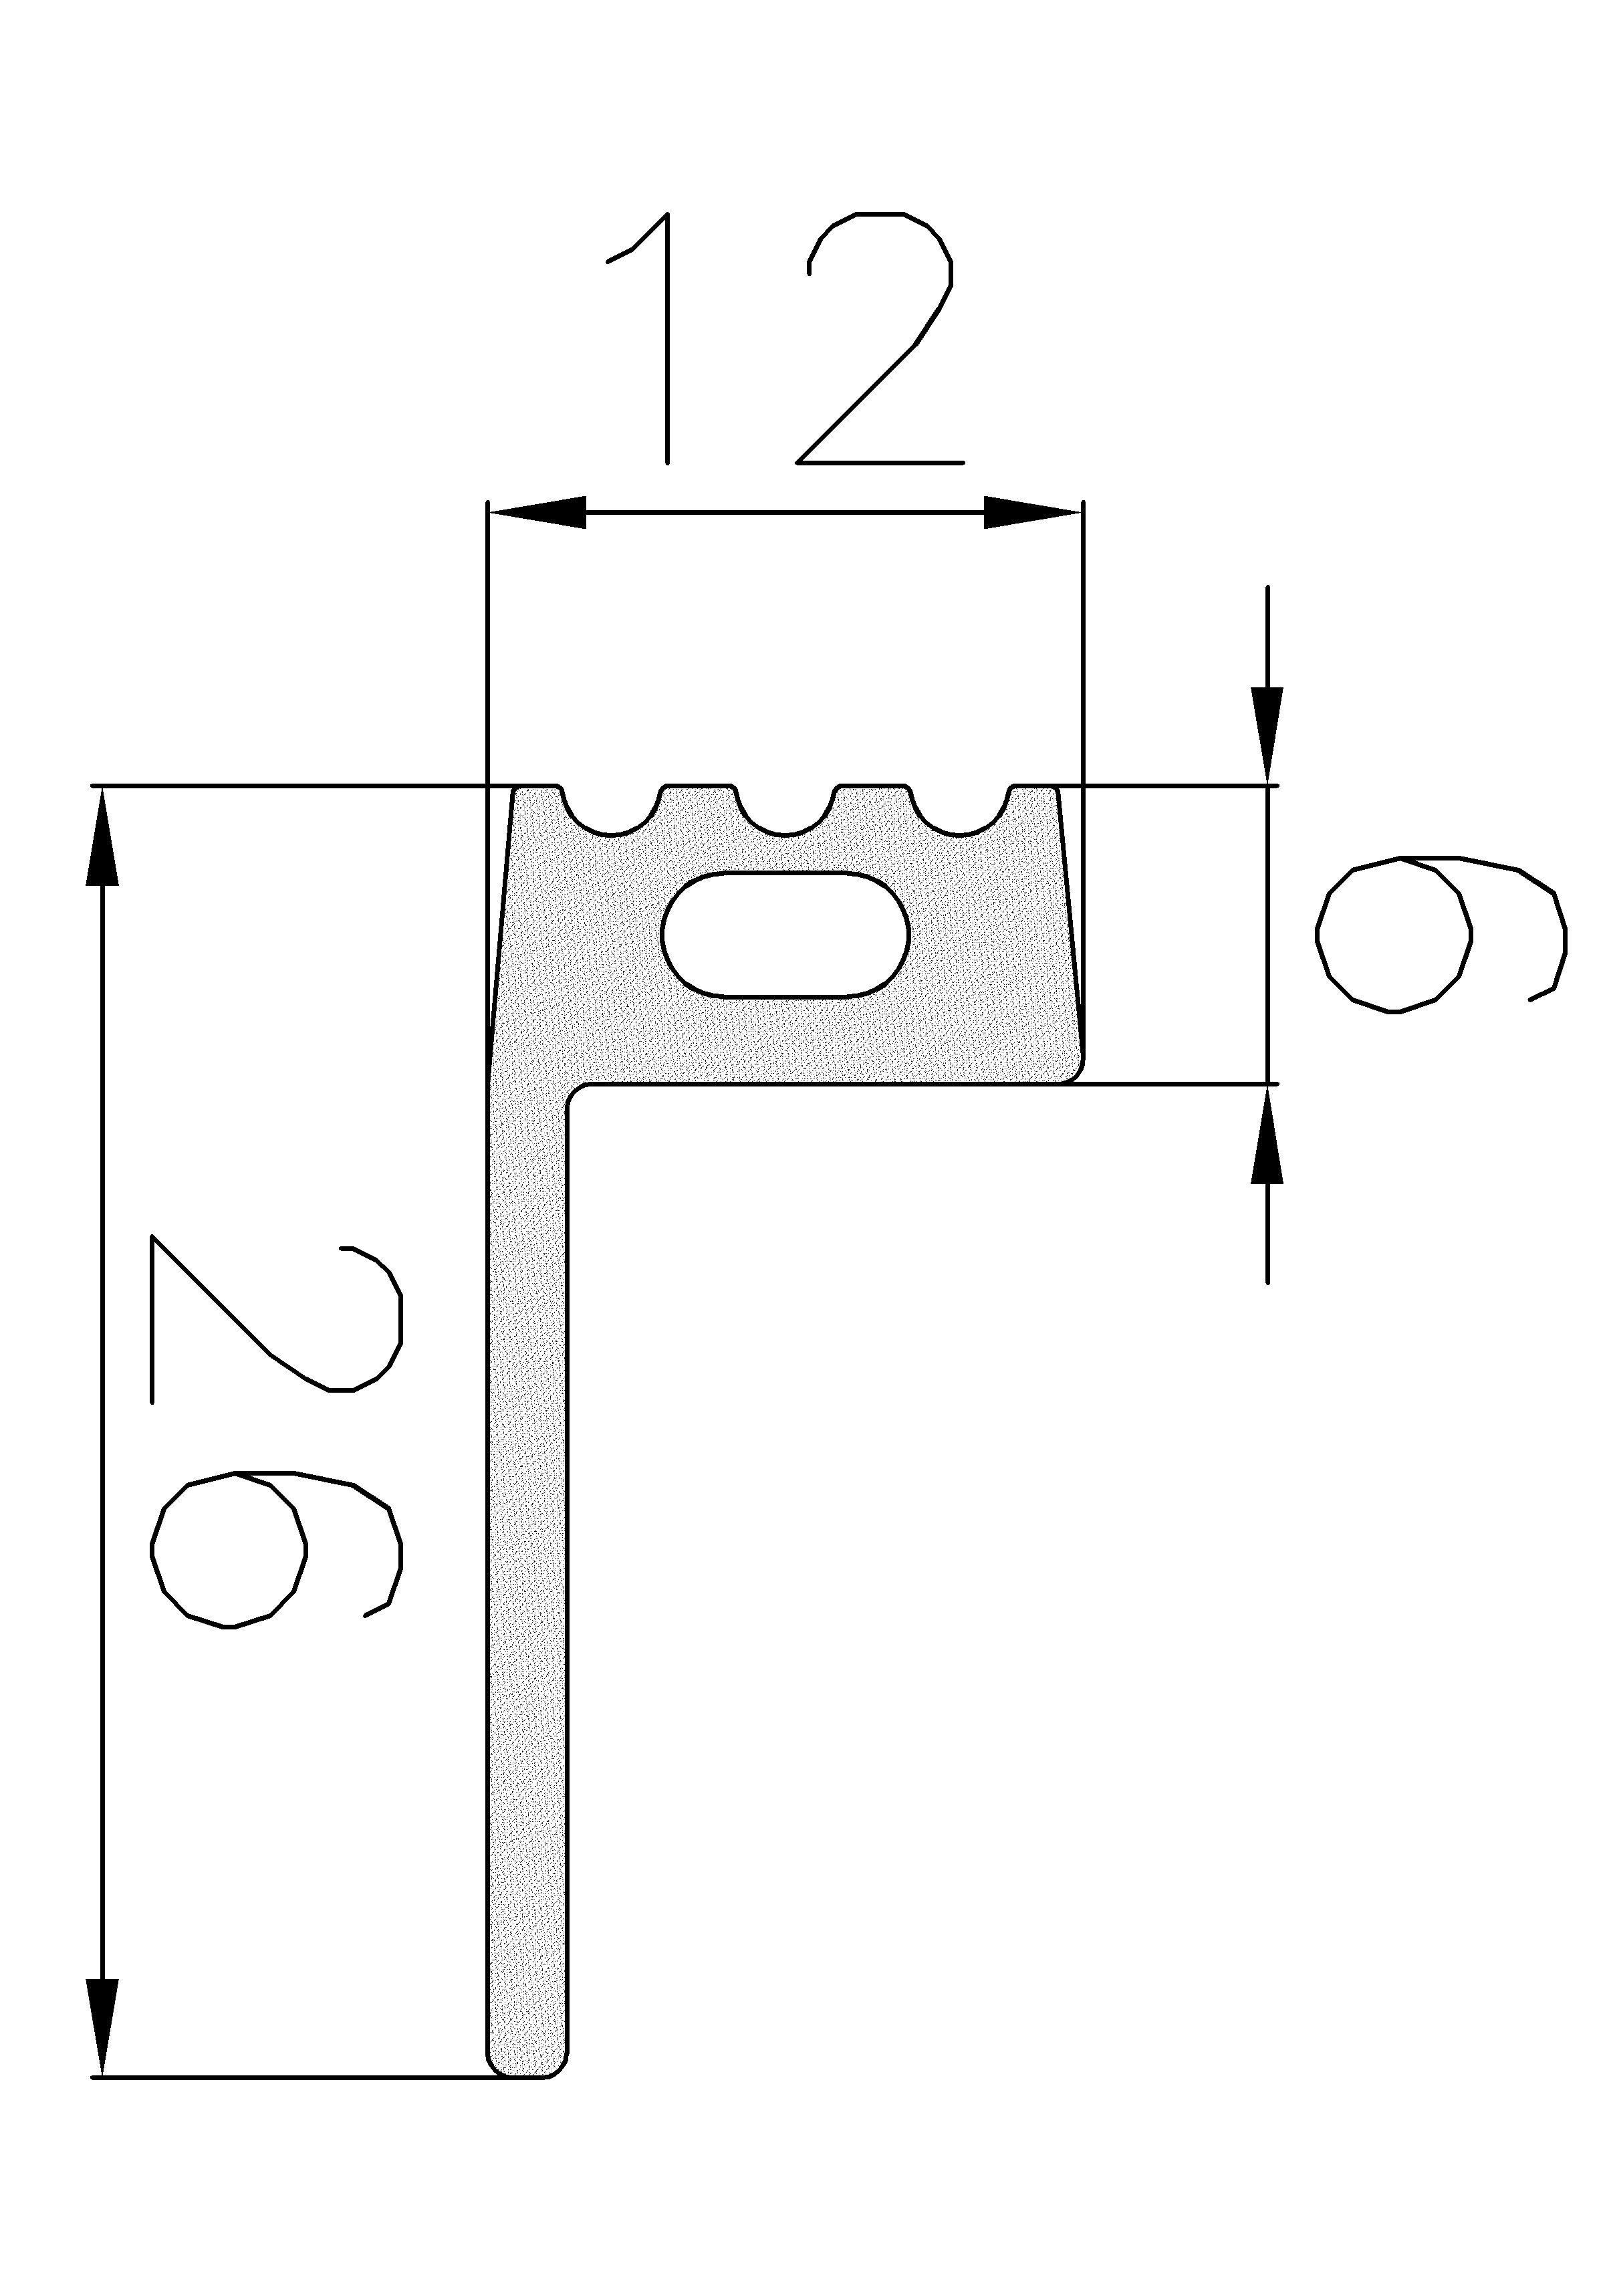 9800403KG - szivacs gumiprofilok - Lobogó vagy 'P' alakú profilok